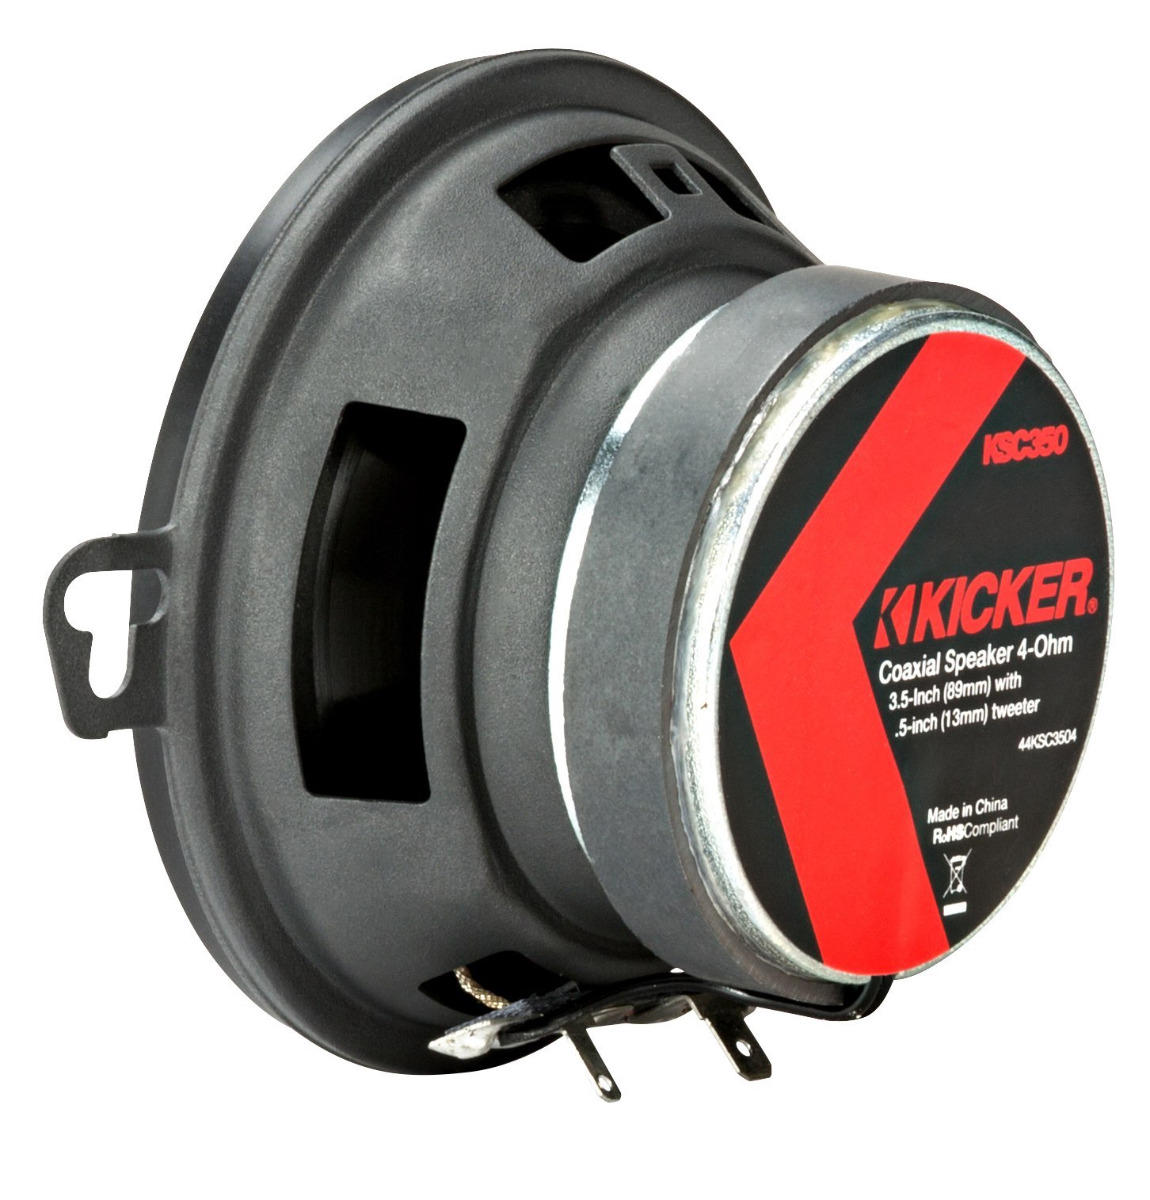 KICKER KSC350 (KSC3504) 8,7 cm 2-Wege Koaxial-Lautsprecher Paar, 100 Watt (3.5") 